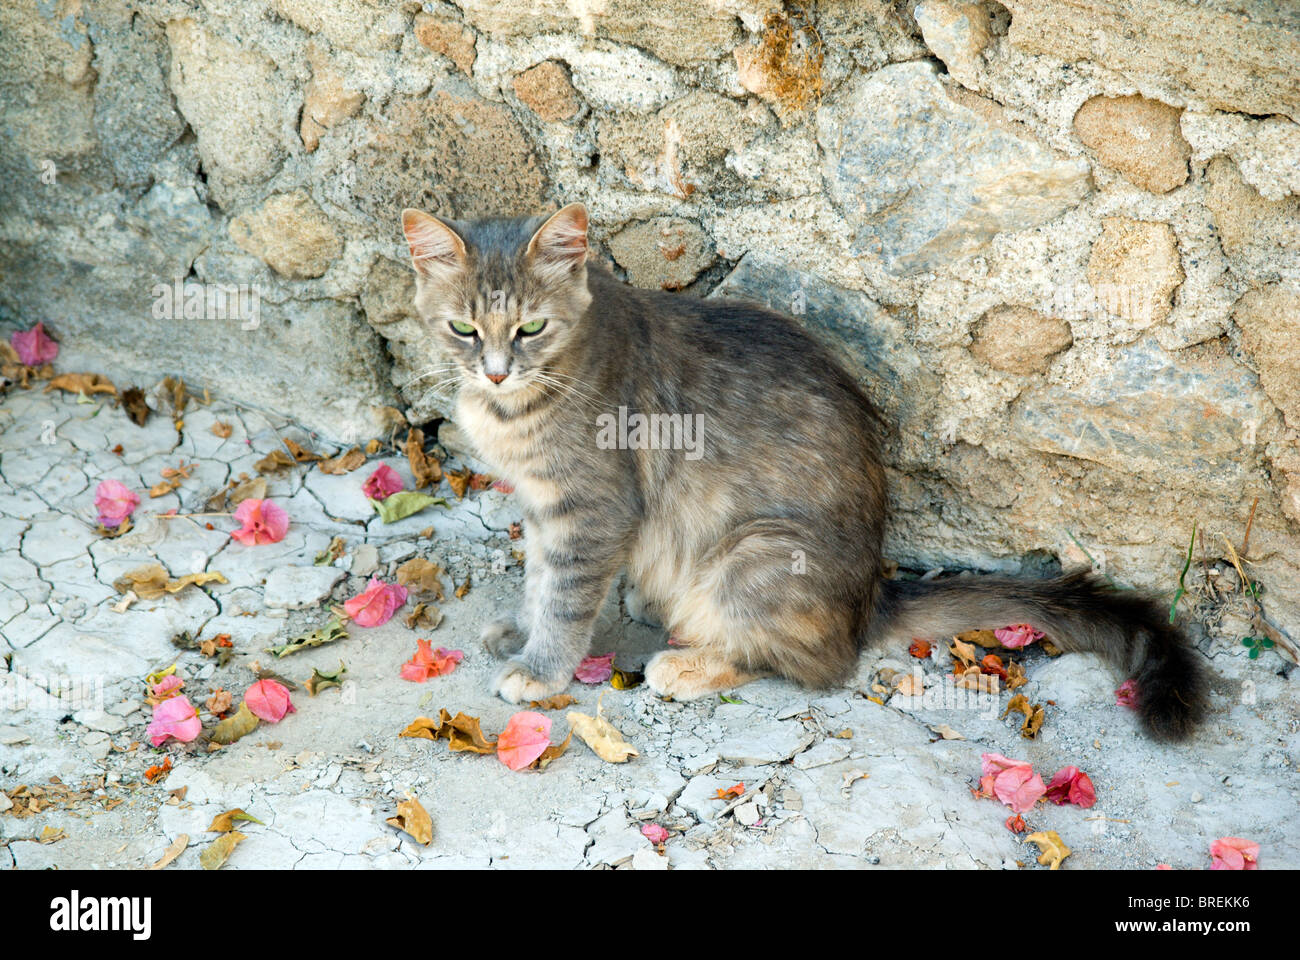 Lindos rhodes pefkos cat grecque du Dodécanèse Grèce Banque D'Images